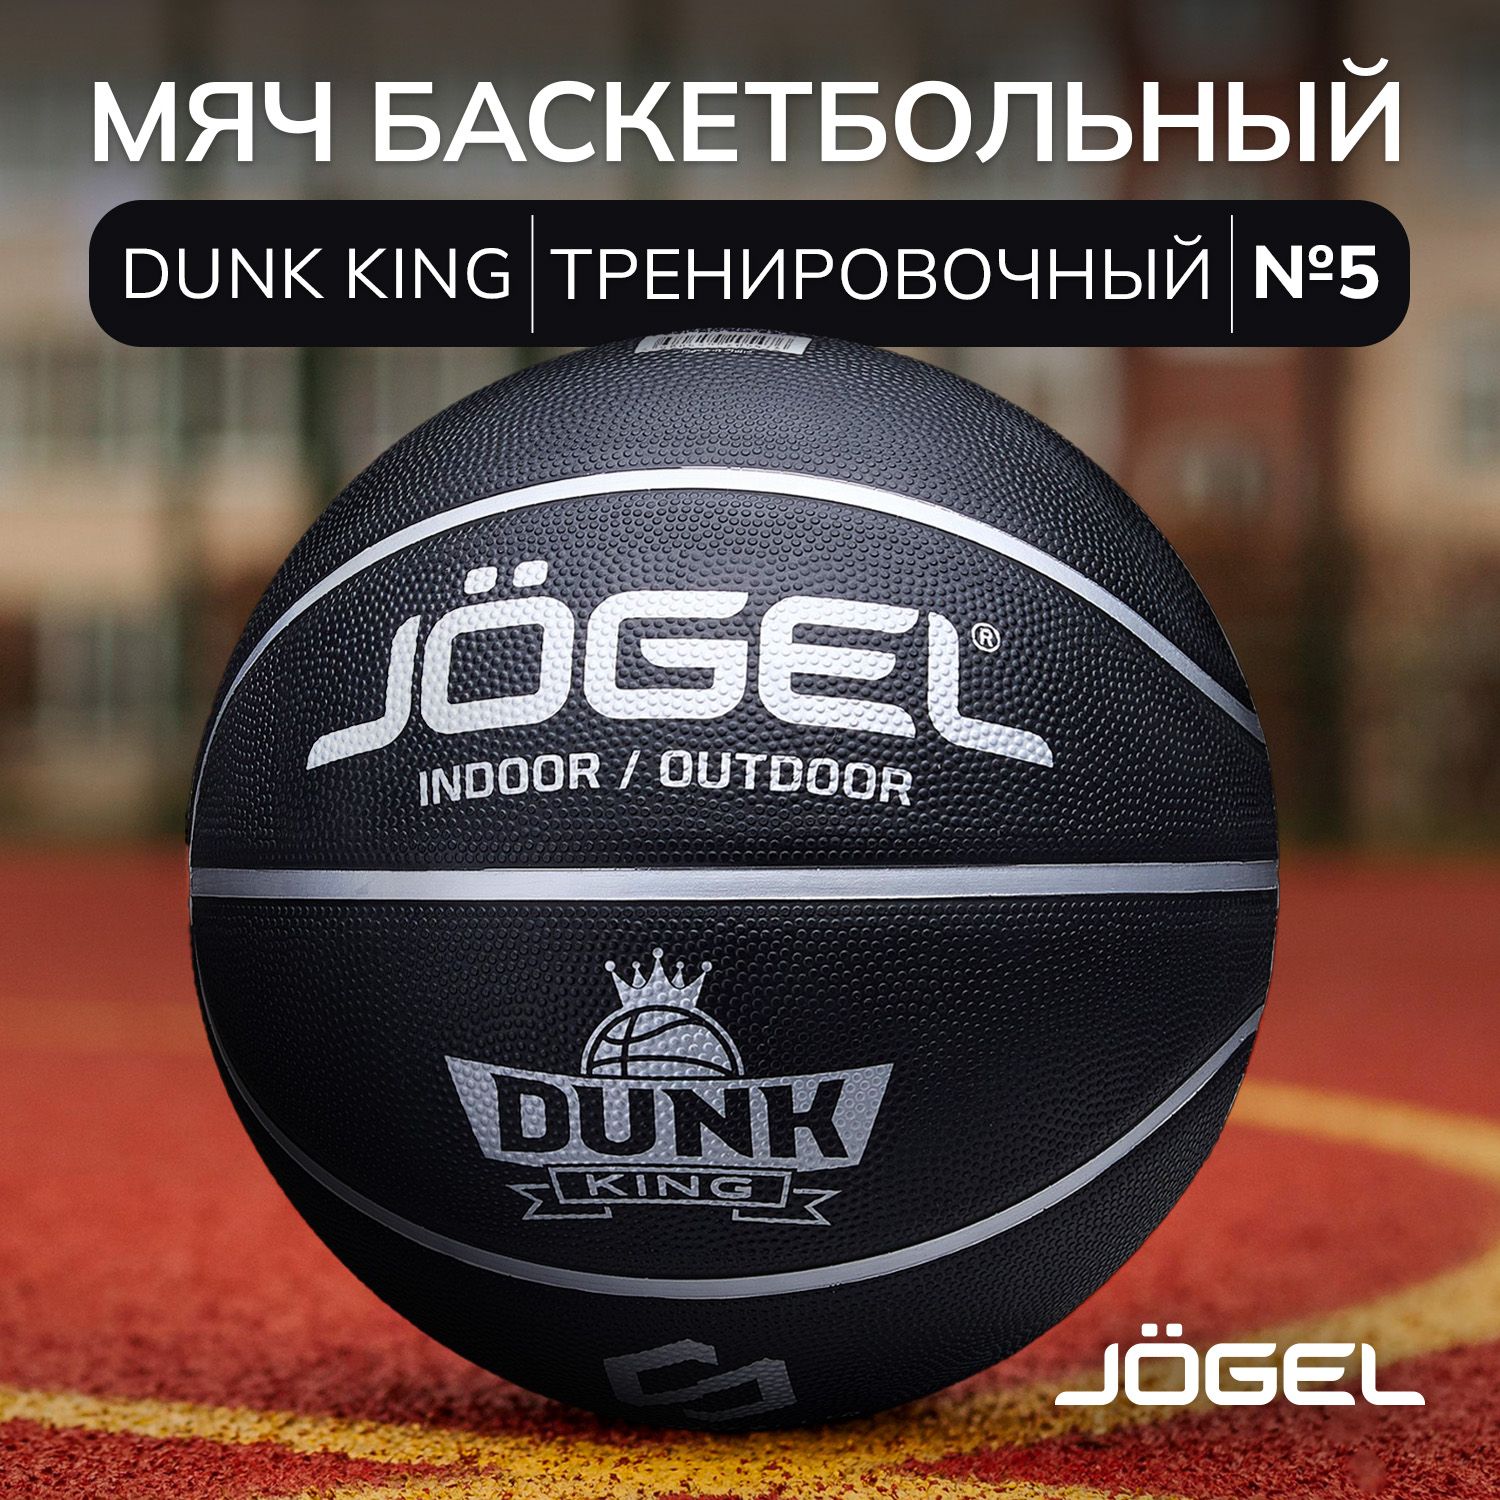 БаскетбольныймячJogelDUNKKINGдляуличногобаскетбола,размер5